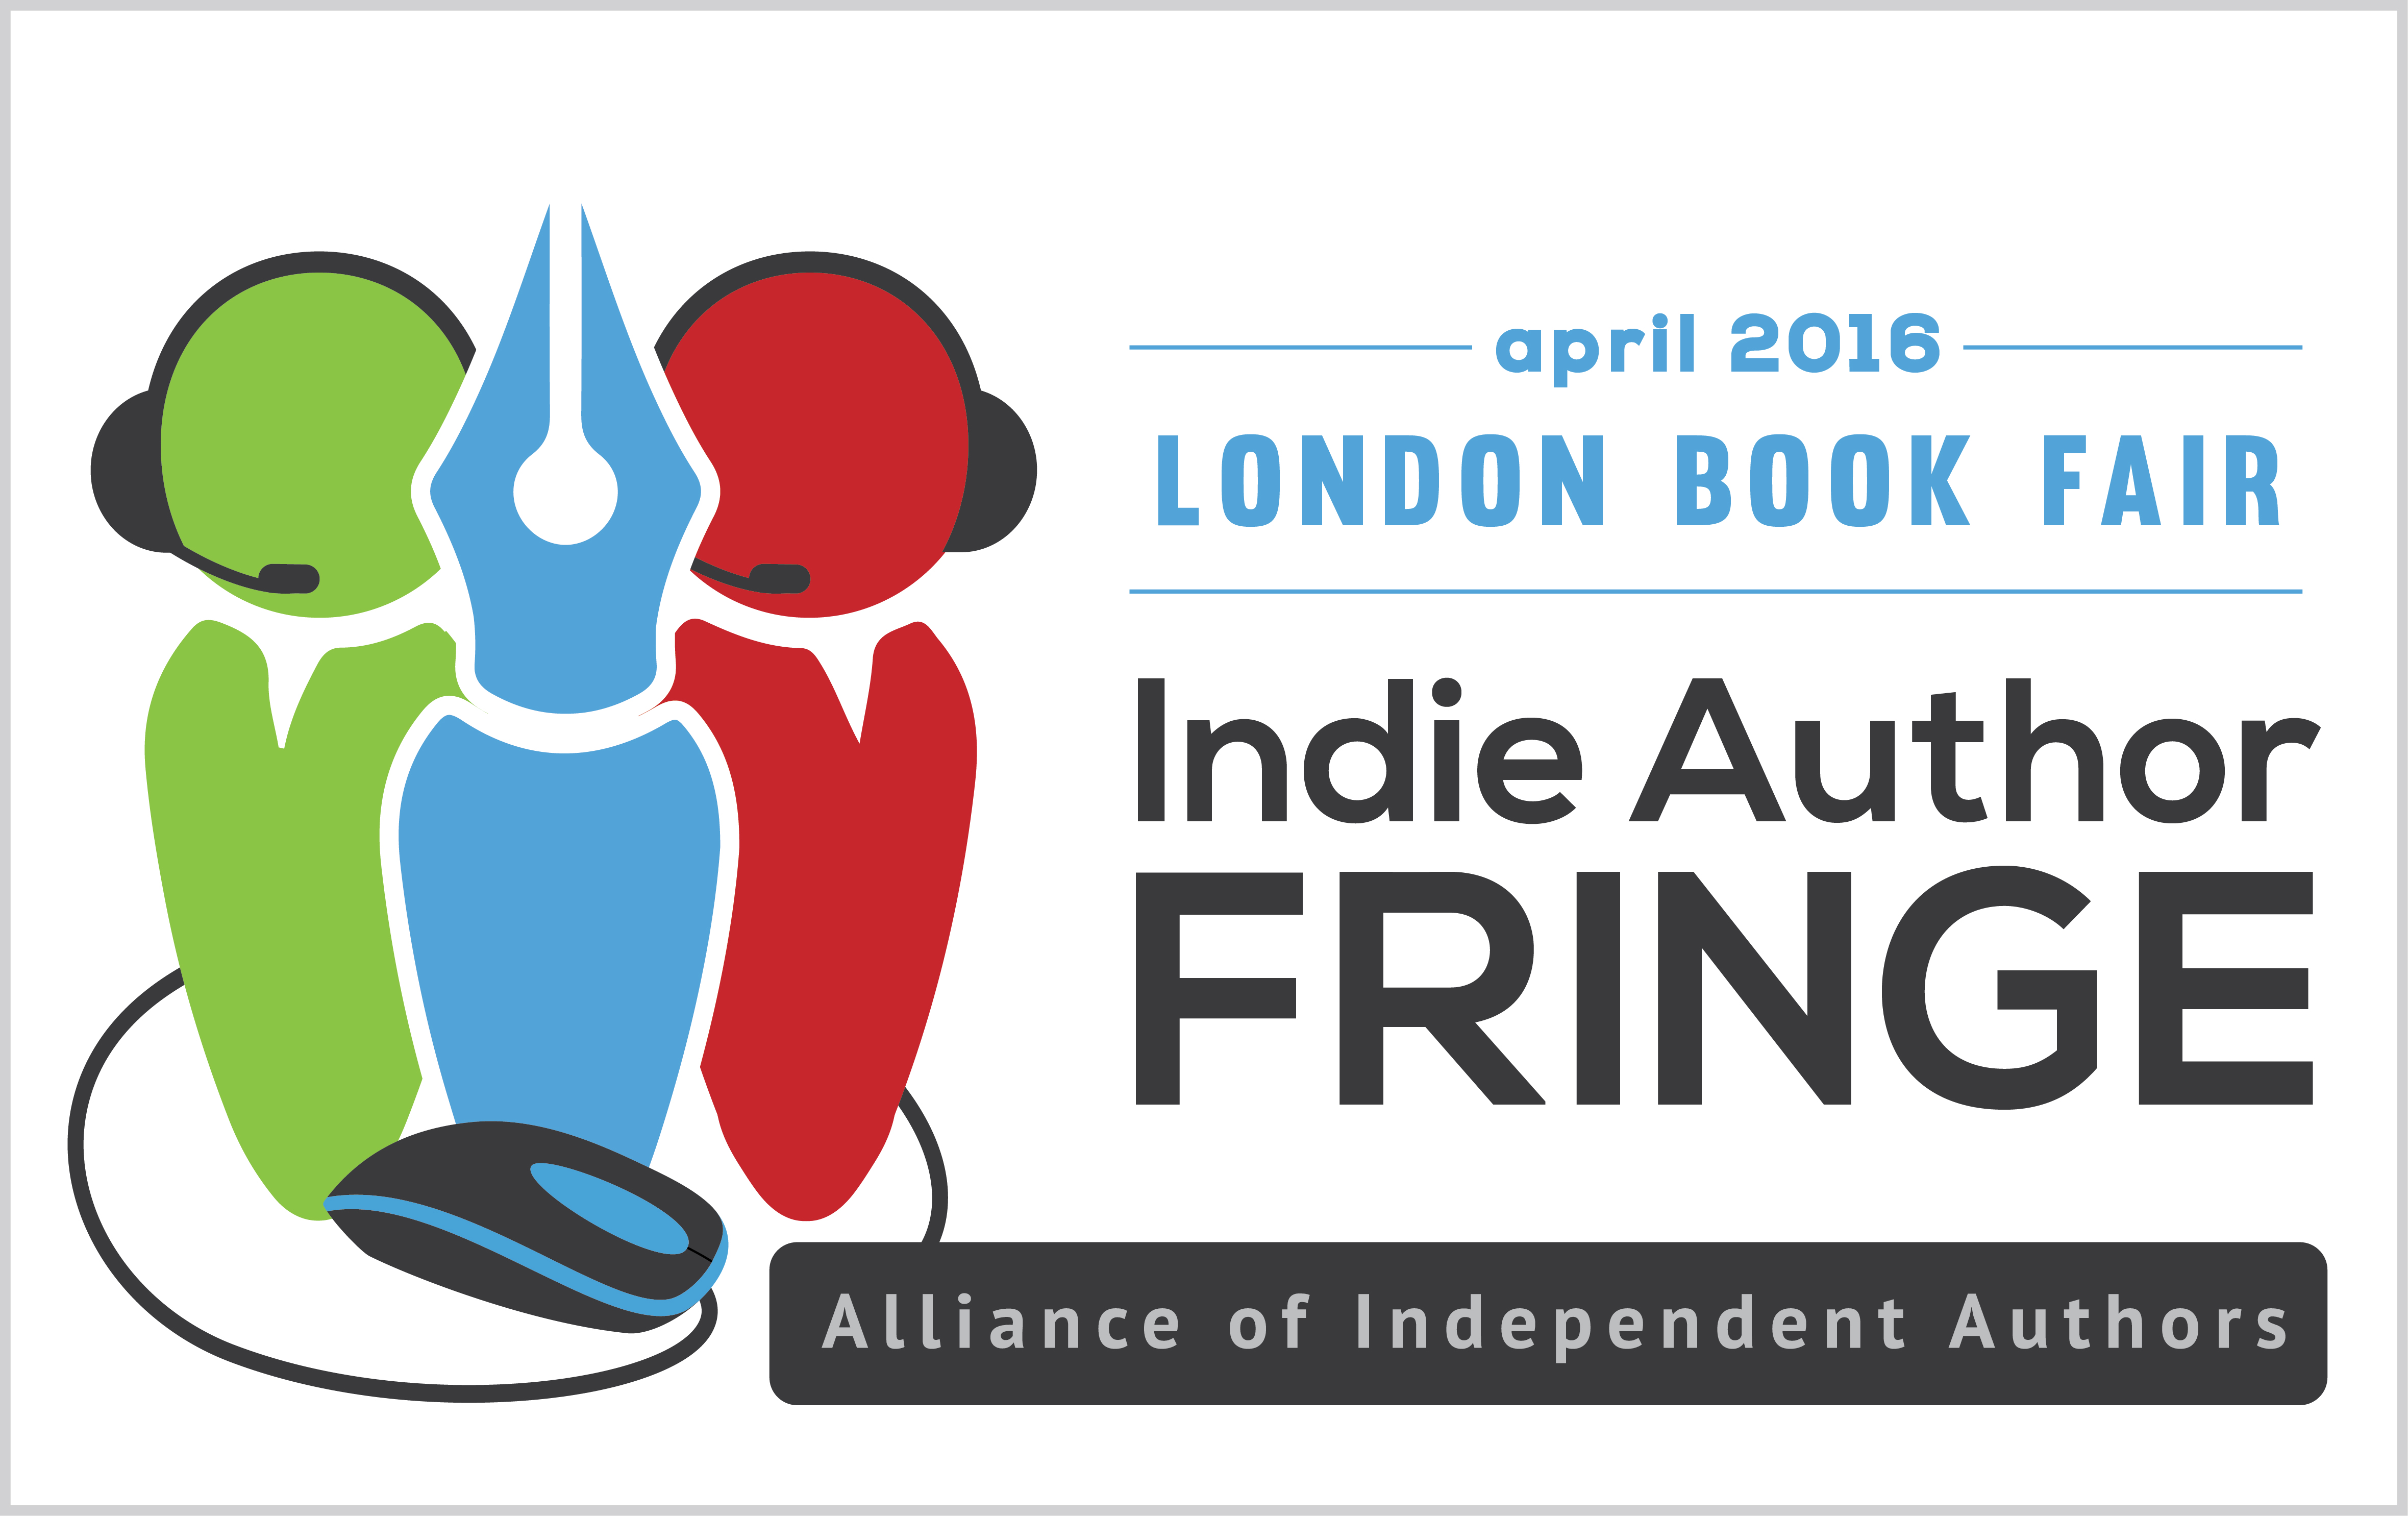 Indie Author Fringe London Book Fair